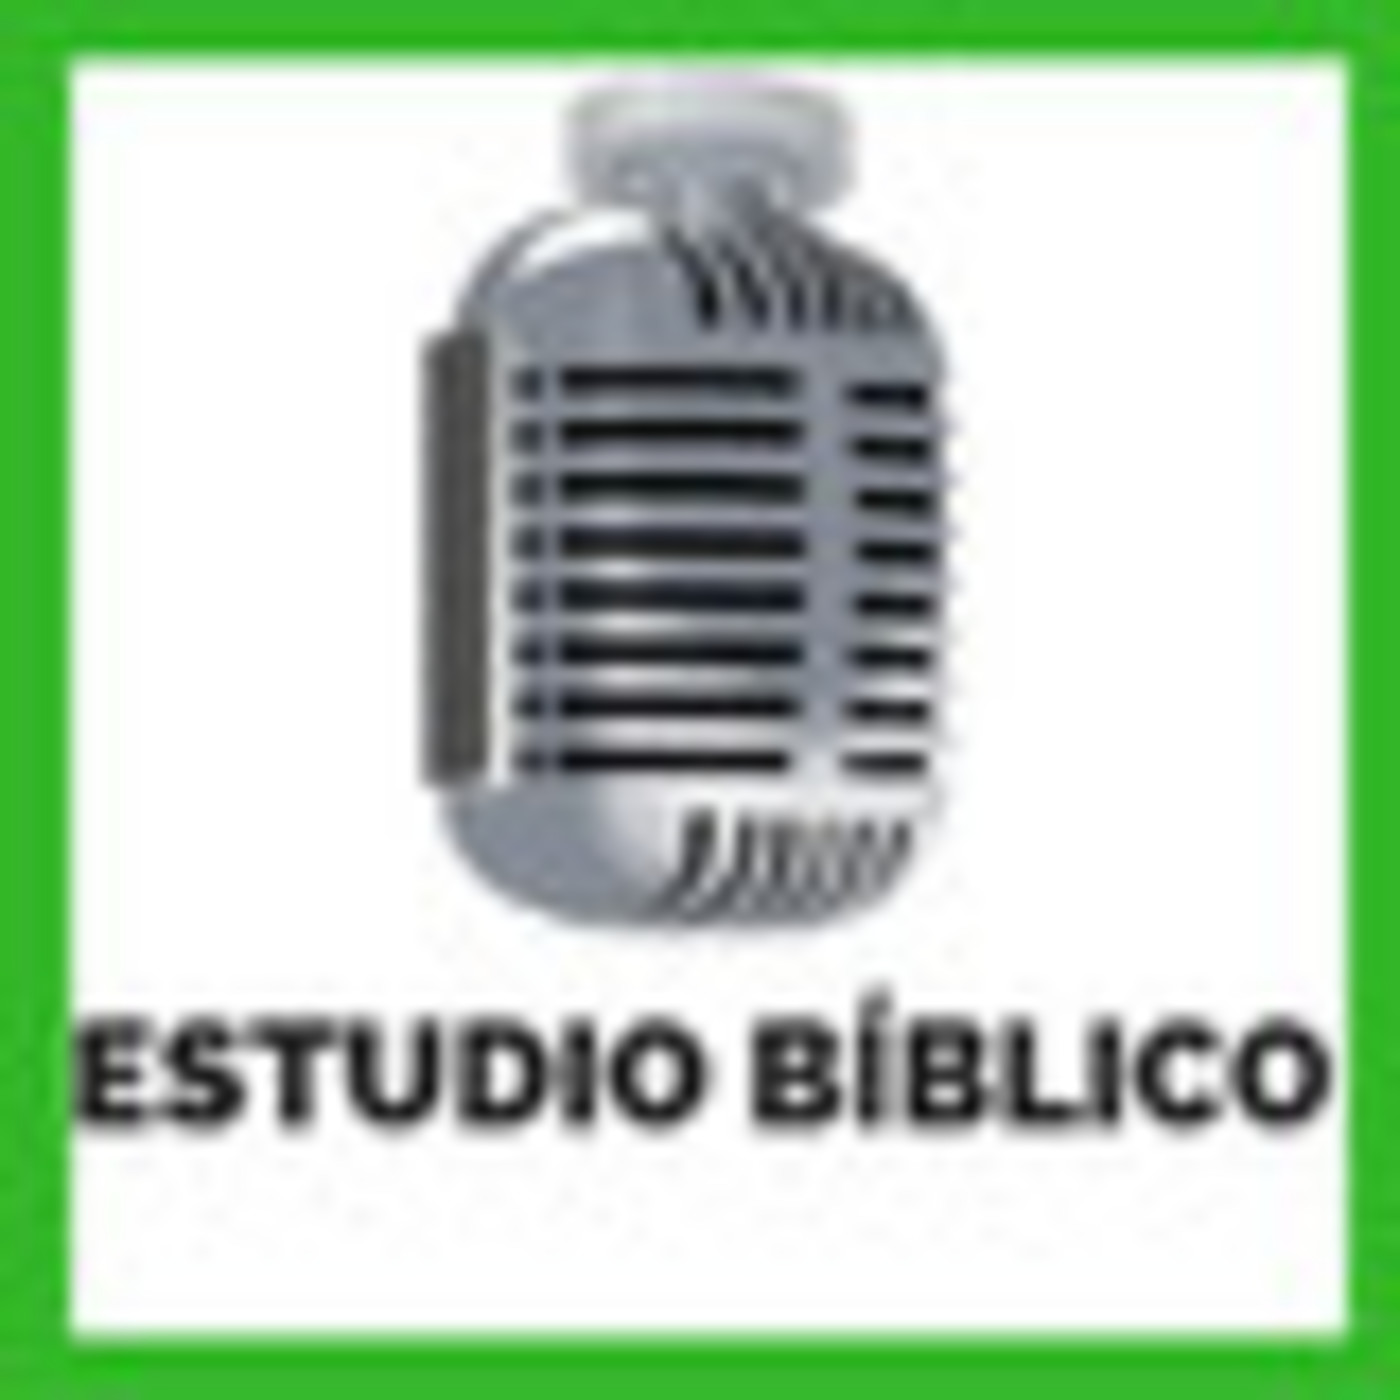 2019-08-18 | Estudio Bíblico | SERVIR A LOS NECESITADOS - EL SERMÓN DEL MONTE